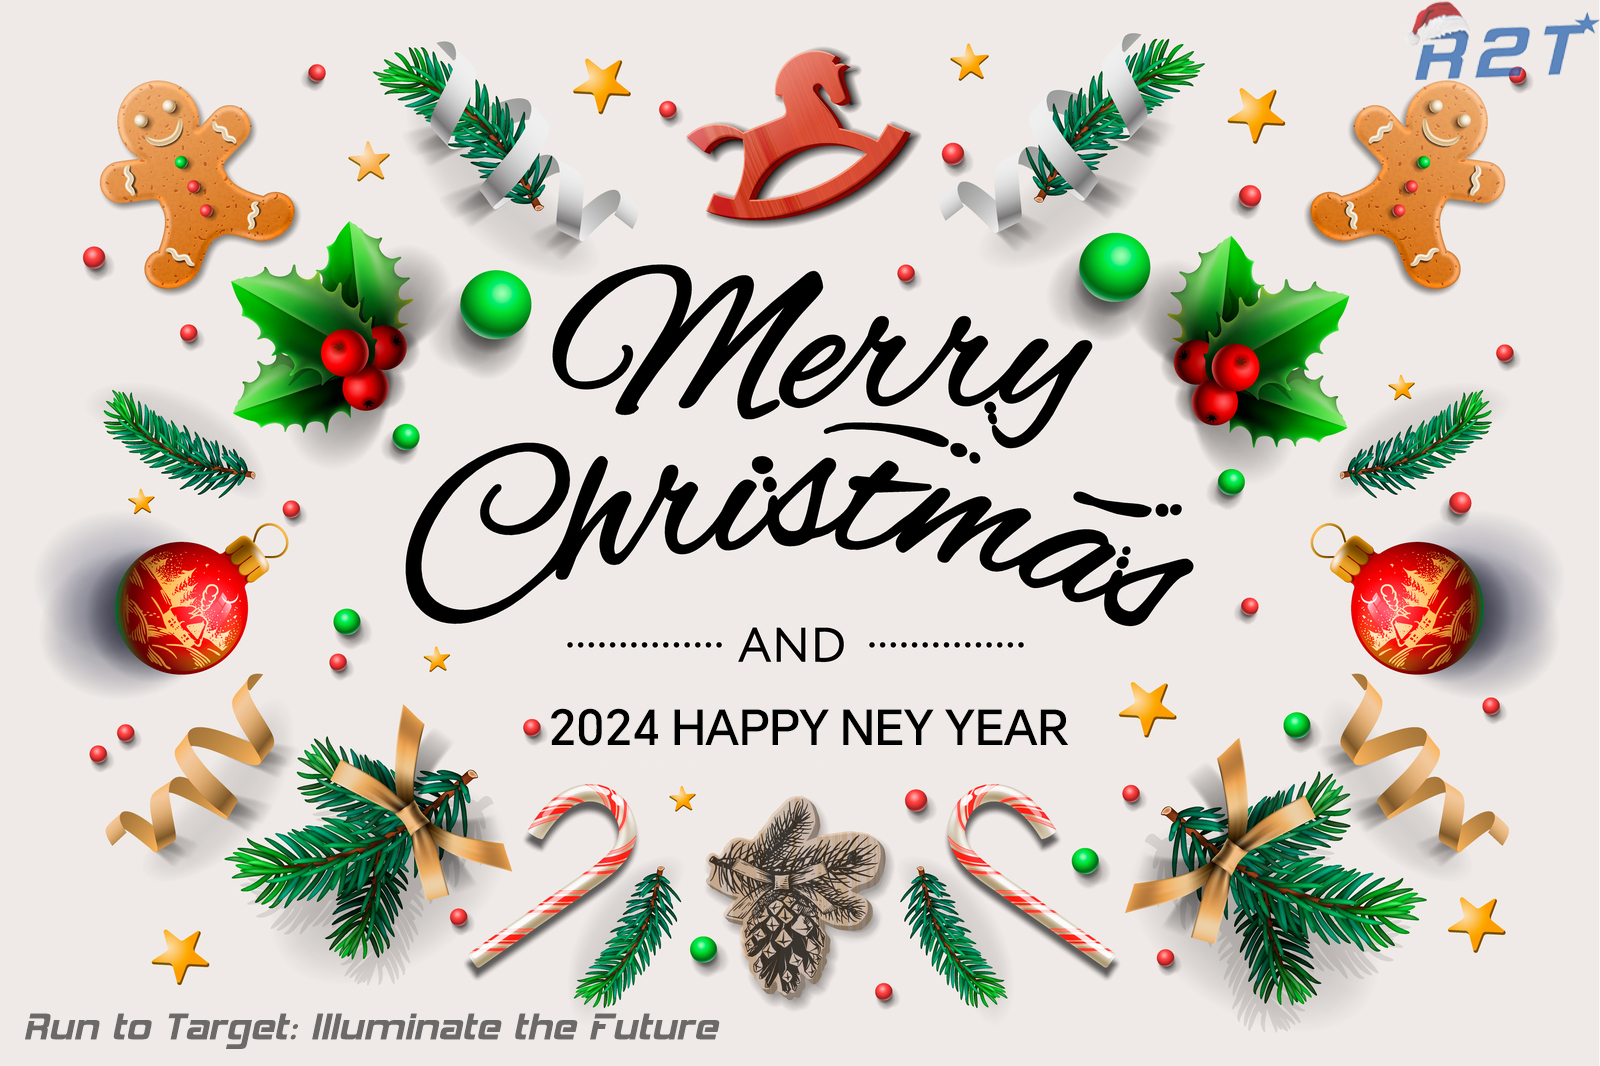 Merry Xmas & Happy 2024 Year